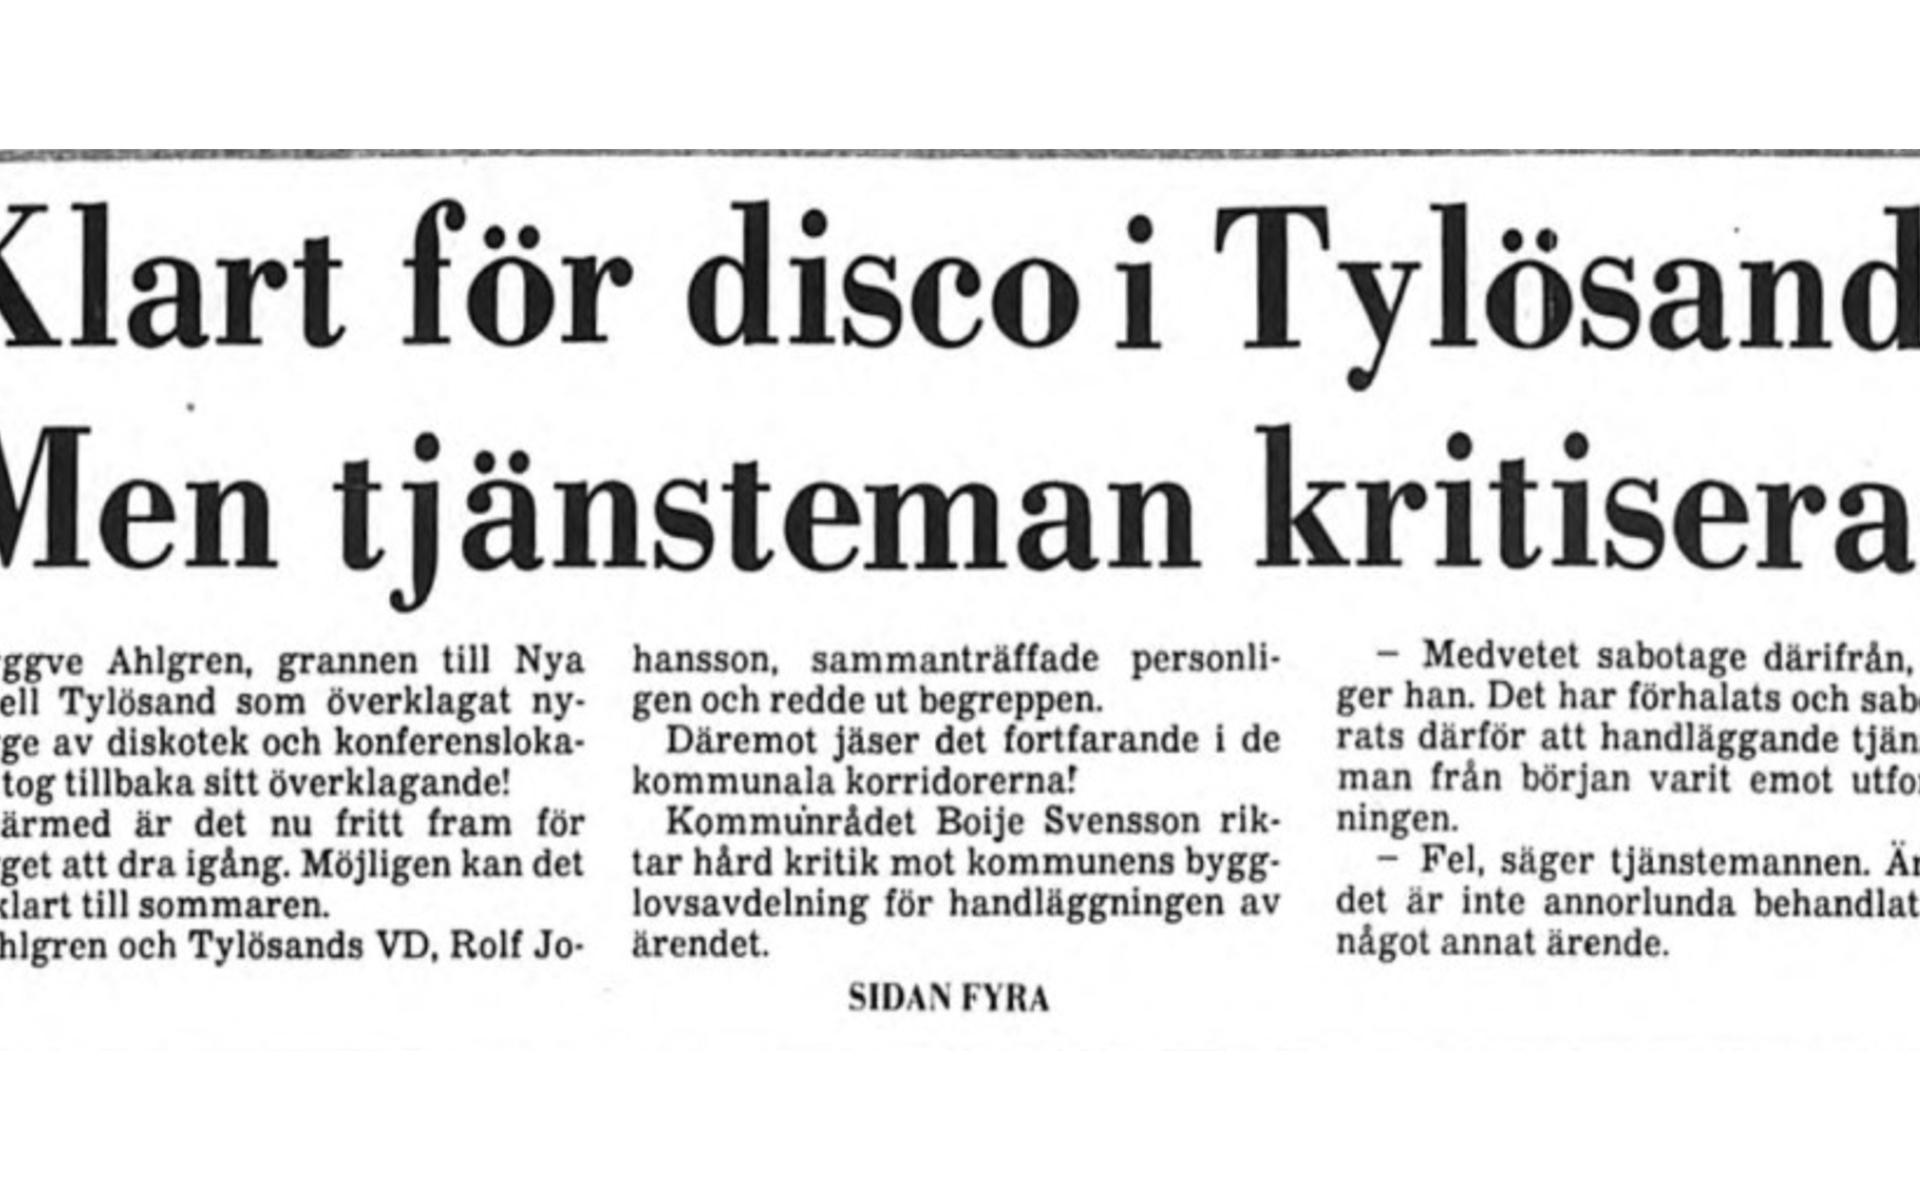 ... men samma år (1984) stod det klart att det skulle bli disco! Men hade det verkligen gått rätt till?